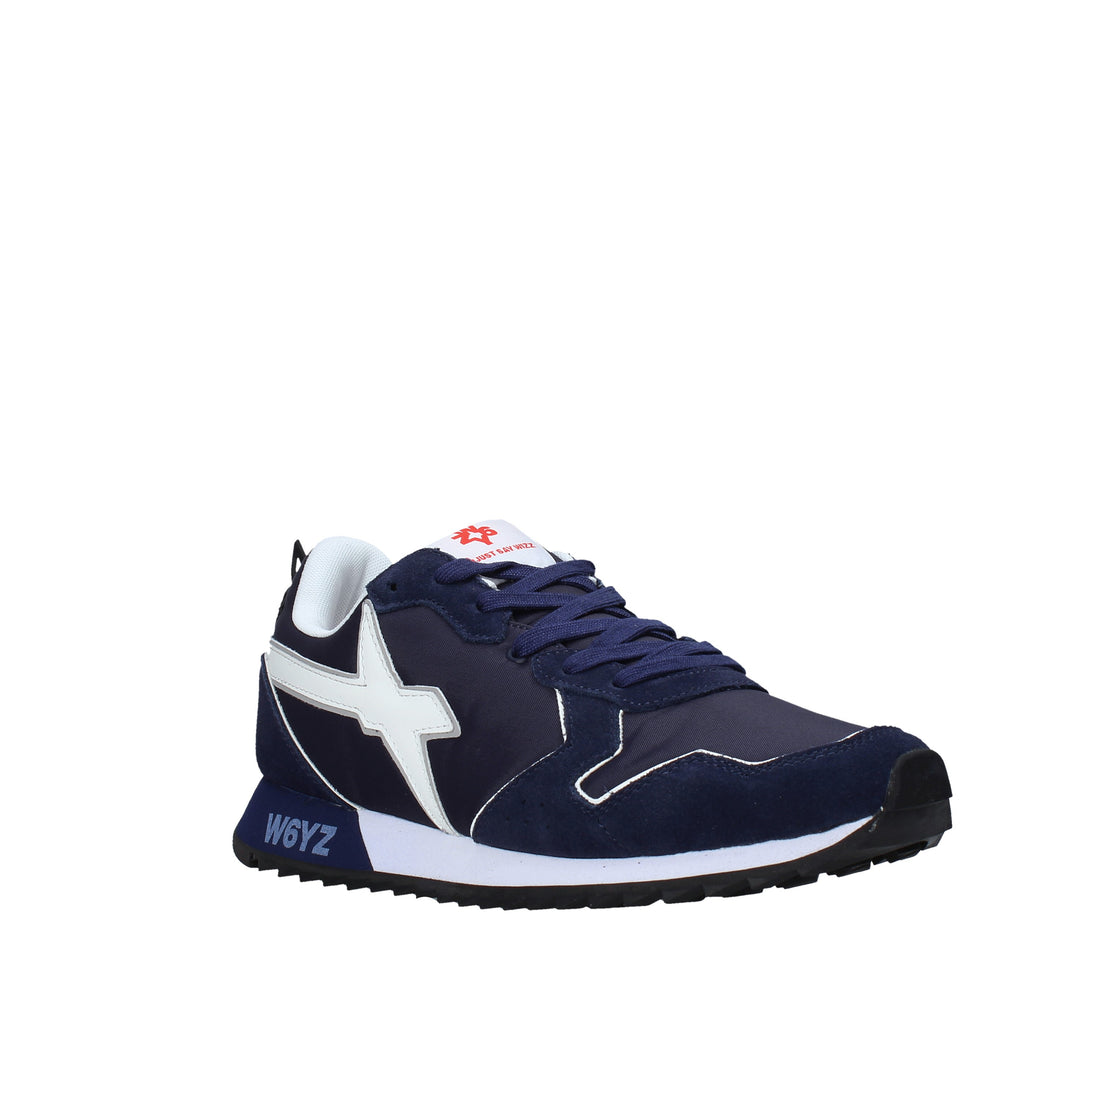 Sneakers Blu Navy W6yz